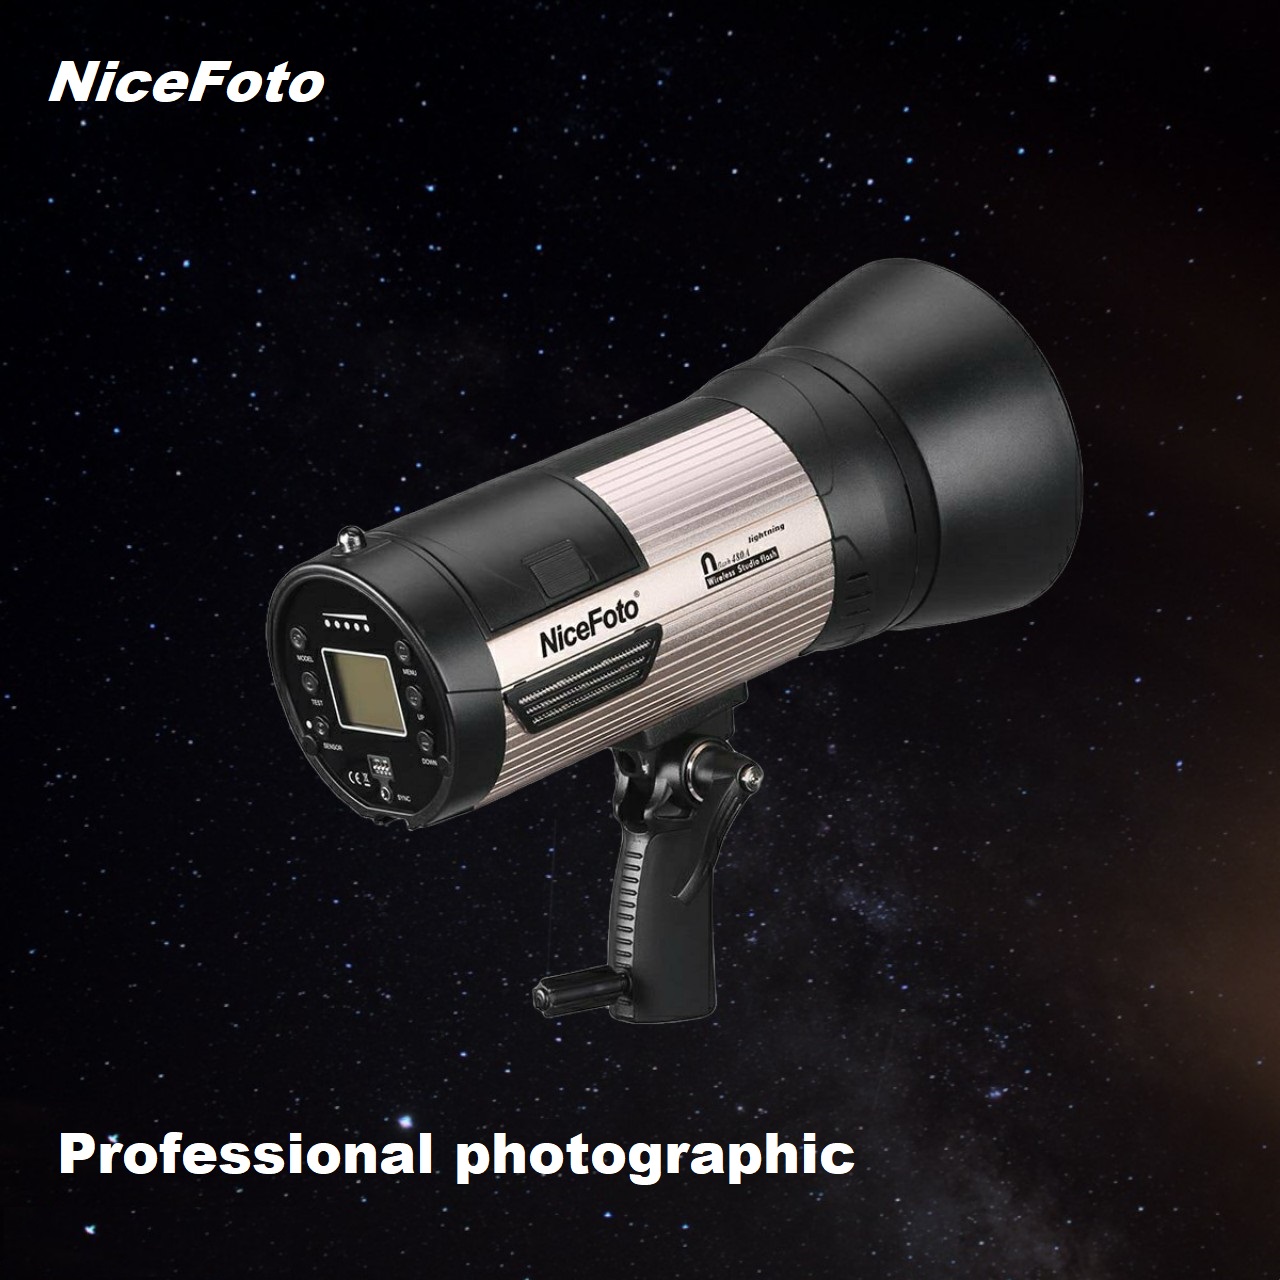 NiceFoto N-flash 480A Đèn flash studio chụp ảnh chuyên nghiệp